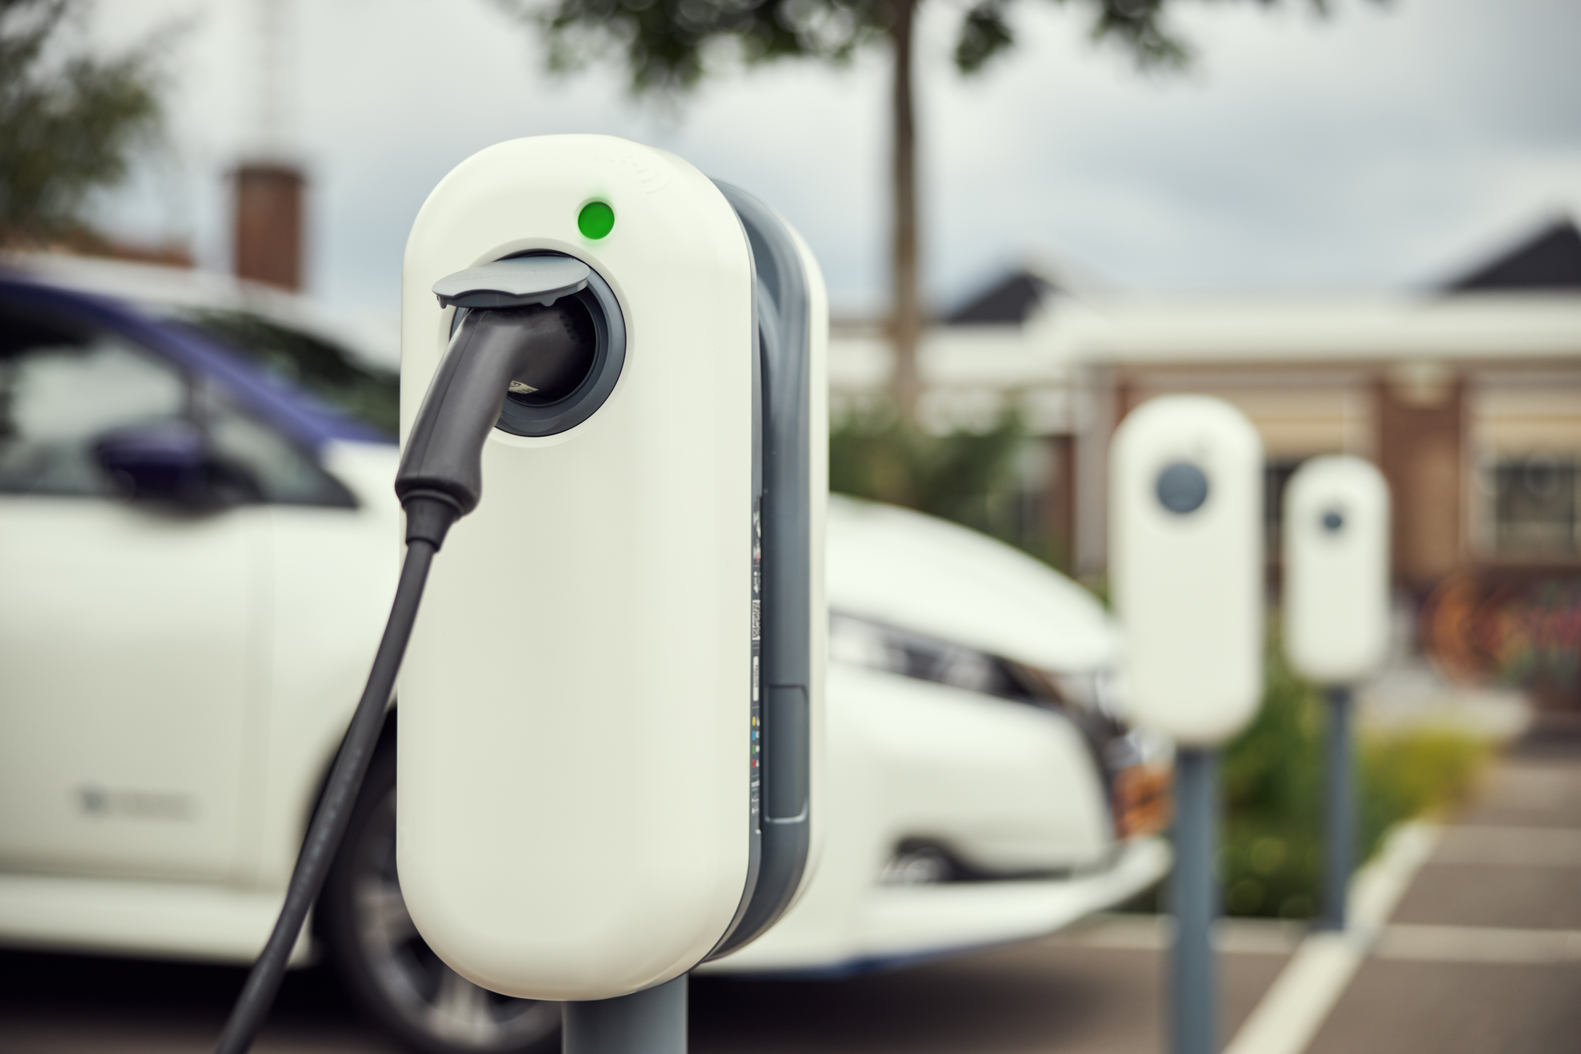 borne de recharge - voitures électriques